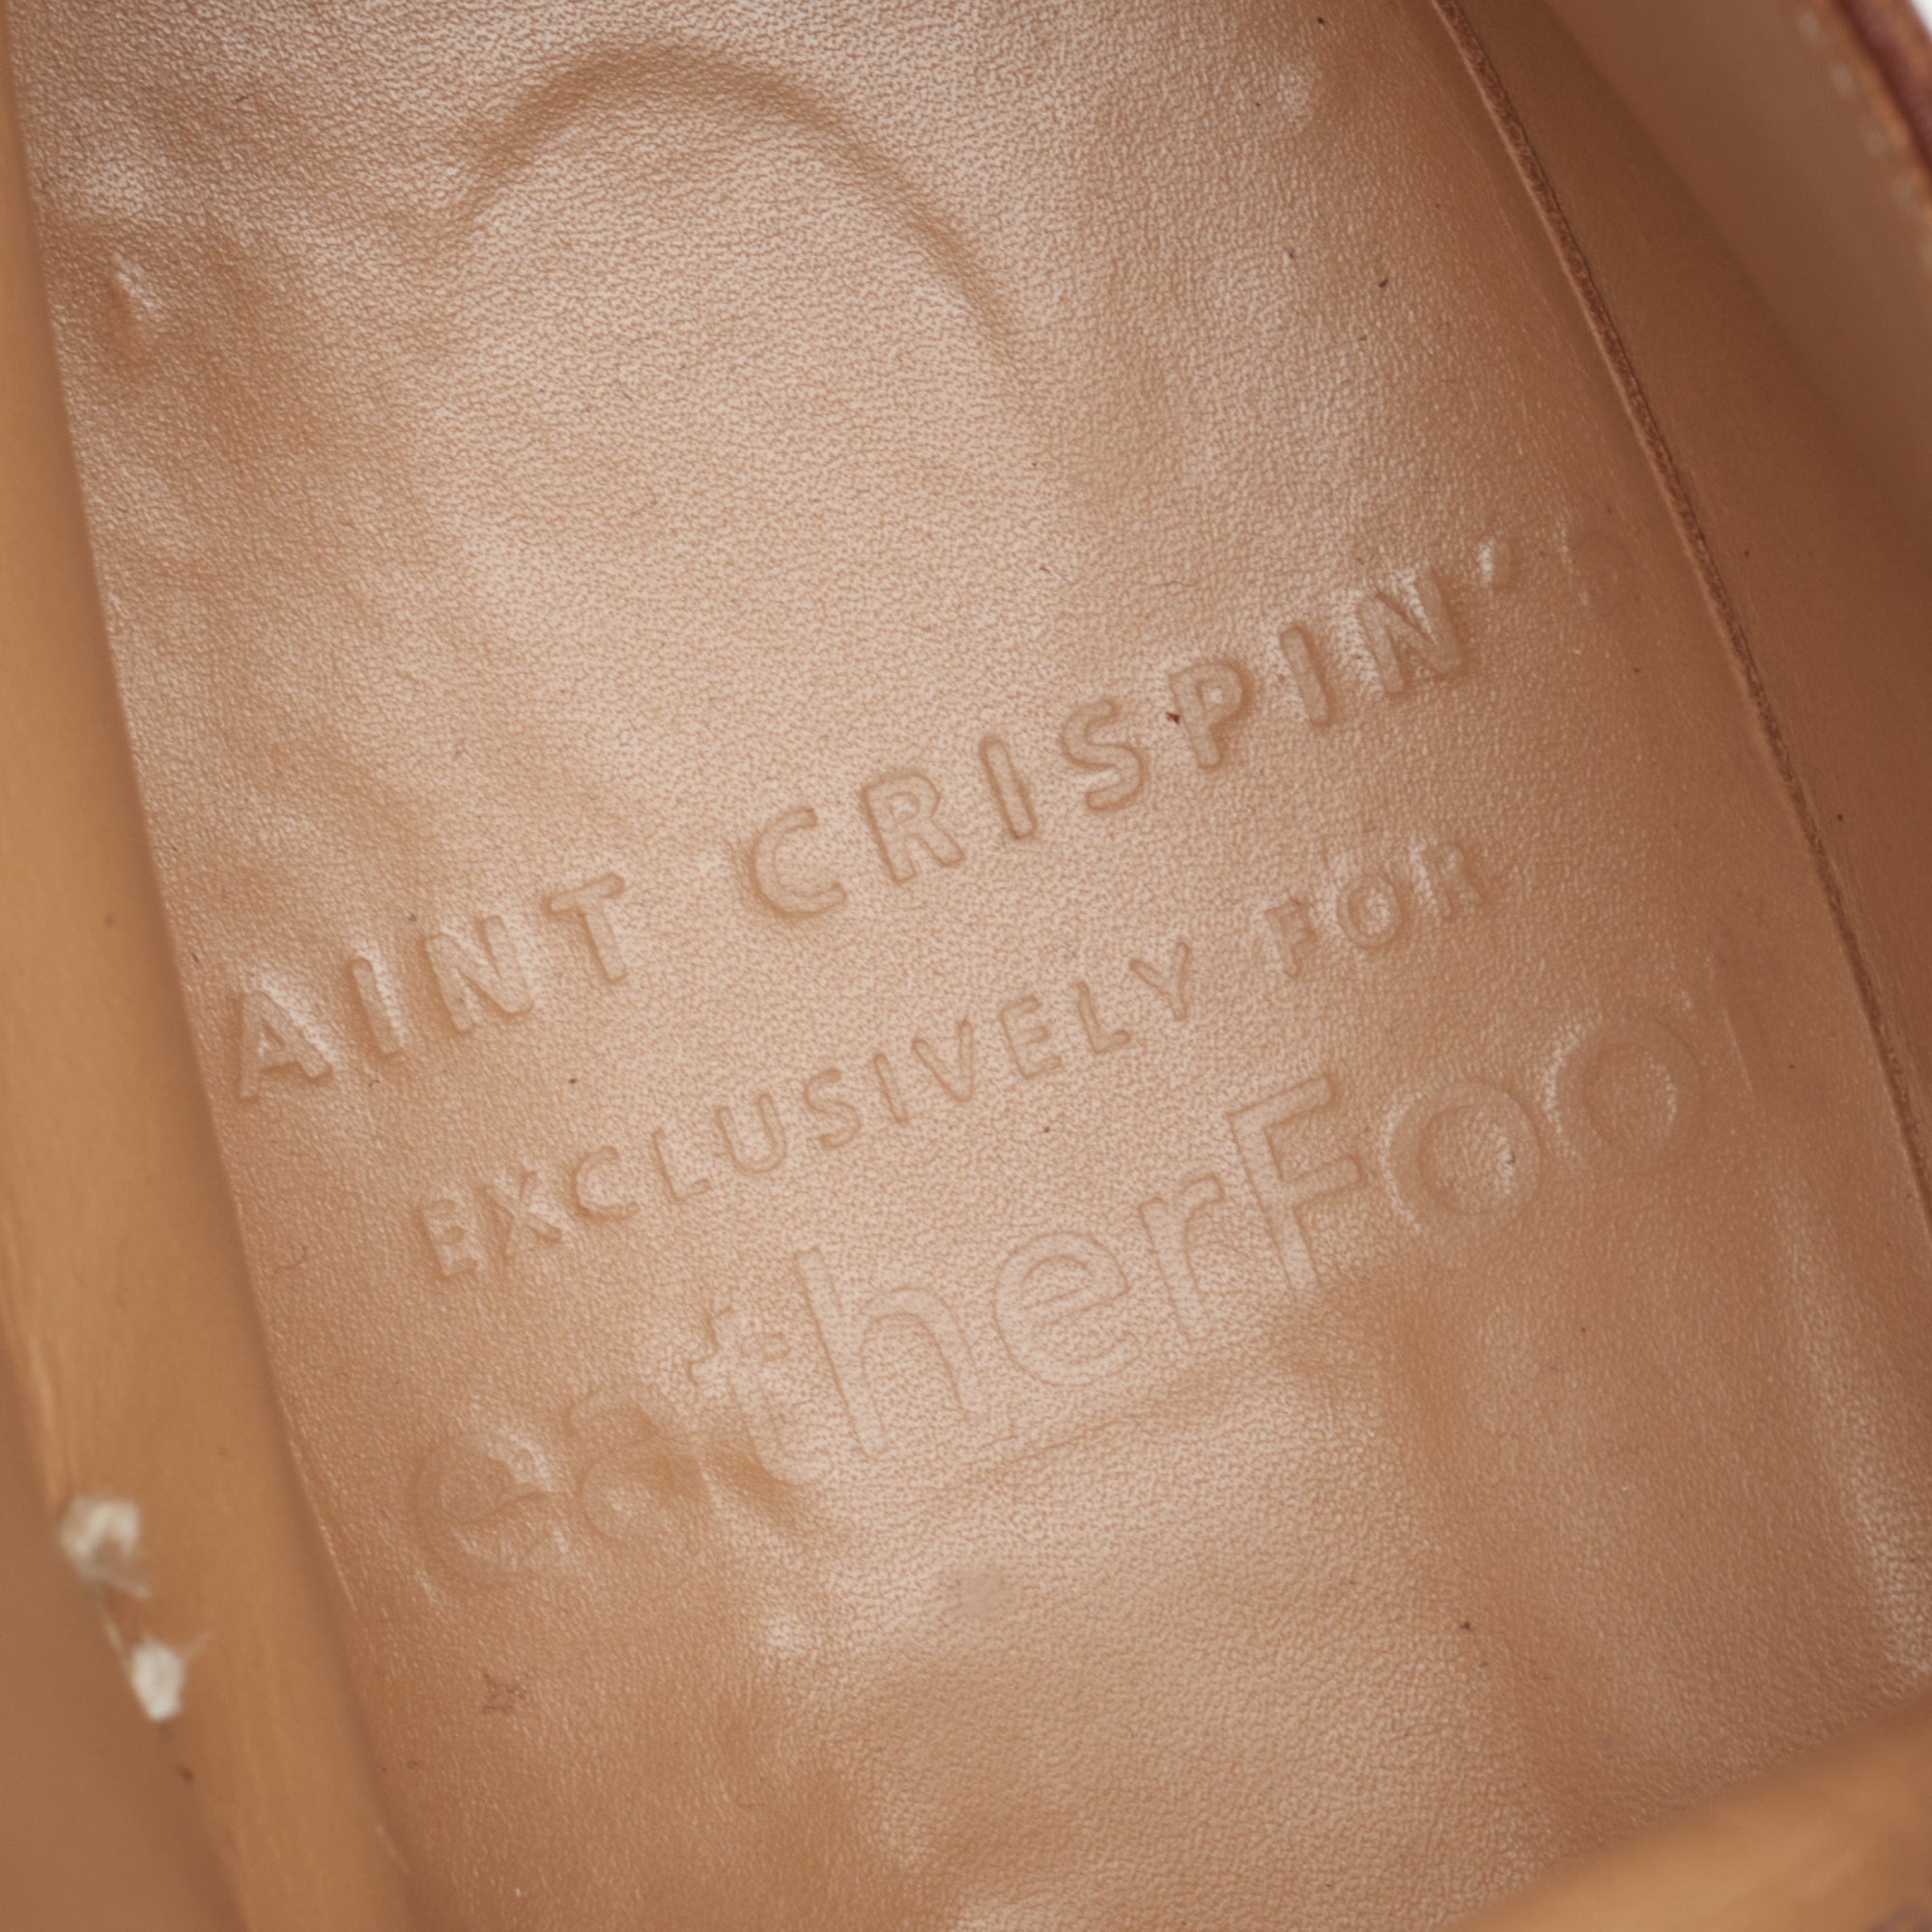 SAINT CRISPIN'S MOD 541 Cognac Leather Double Monk Boots Shoes 7.5 US 8.5 Trees SAINT CRISPIN'S